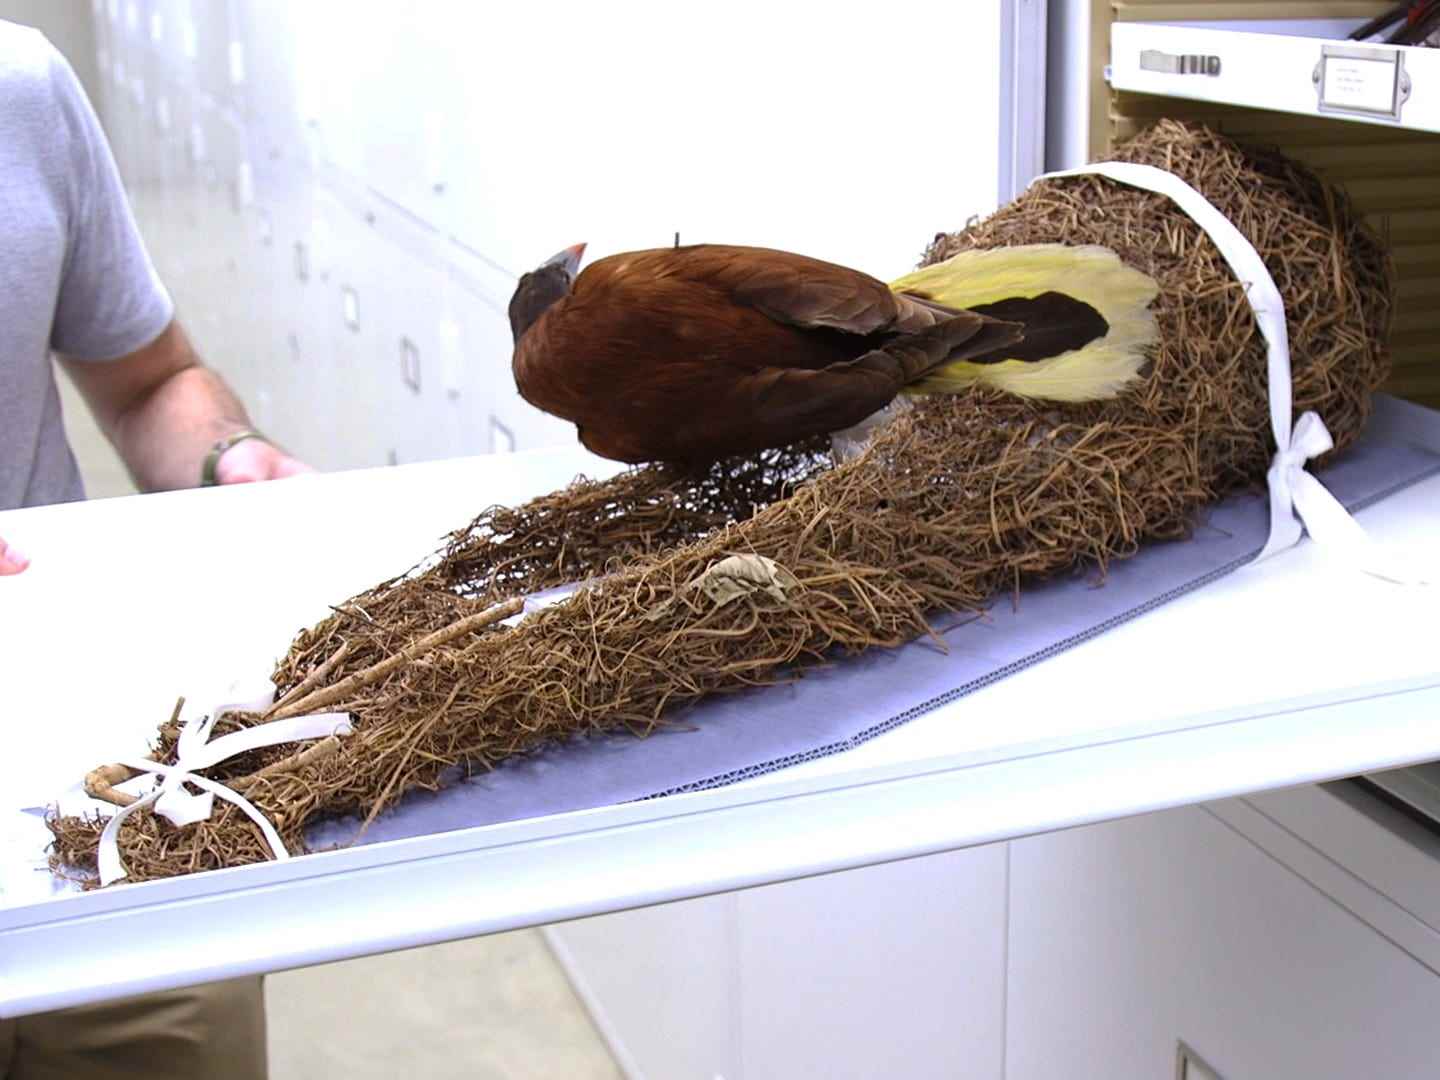 Ein Oropendola-Vogel und sein Nest in einer Schublade aus einem anderen Blickwinkel.